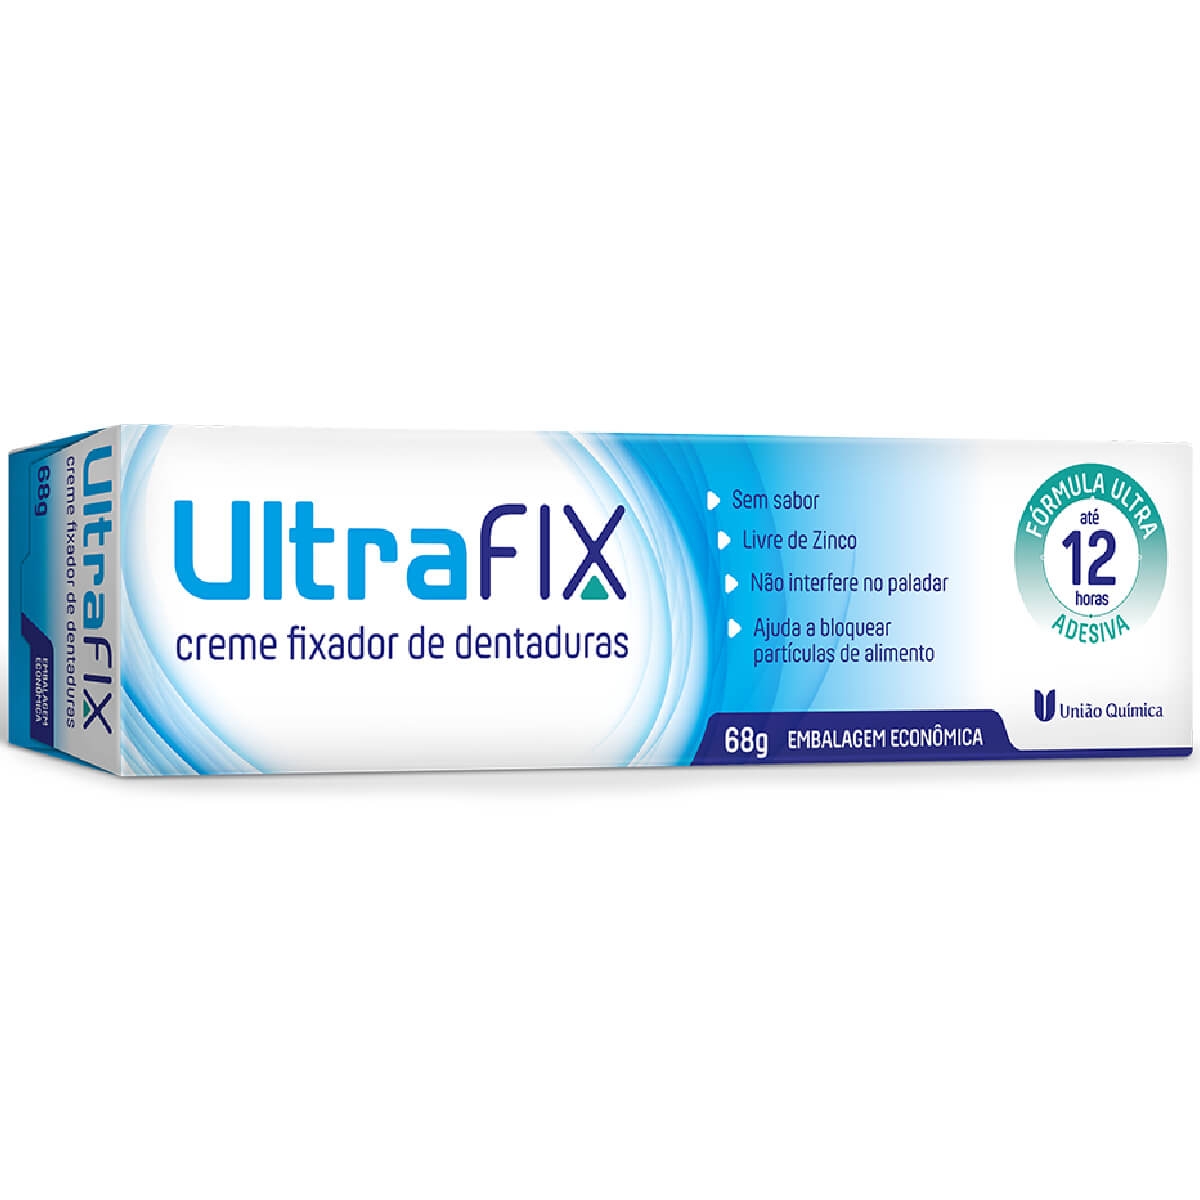 Creme Fixador de Dentadura UltraFix Sem Sabor União Química 68g